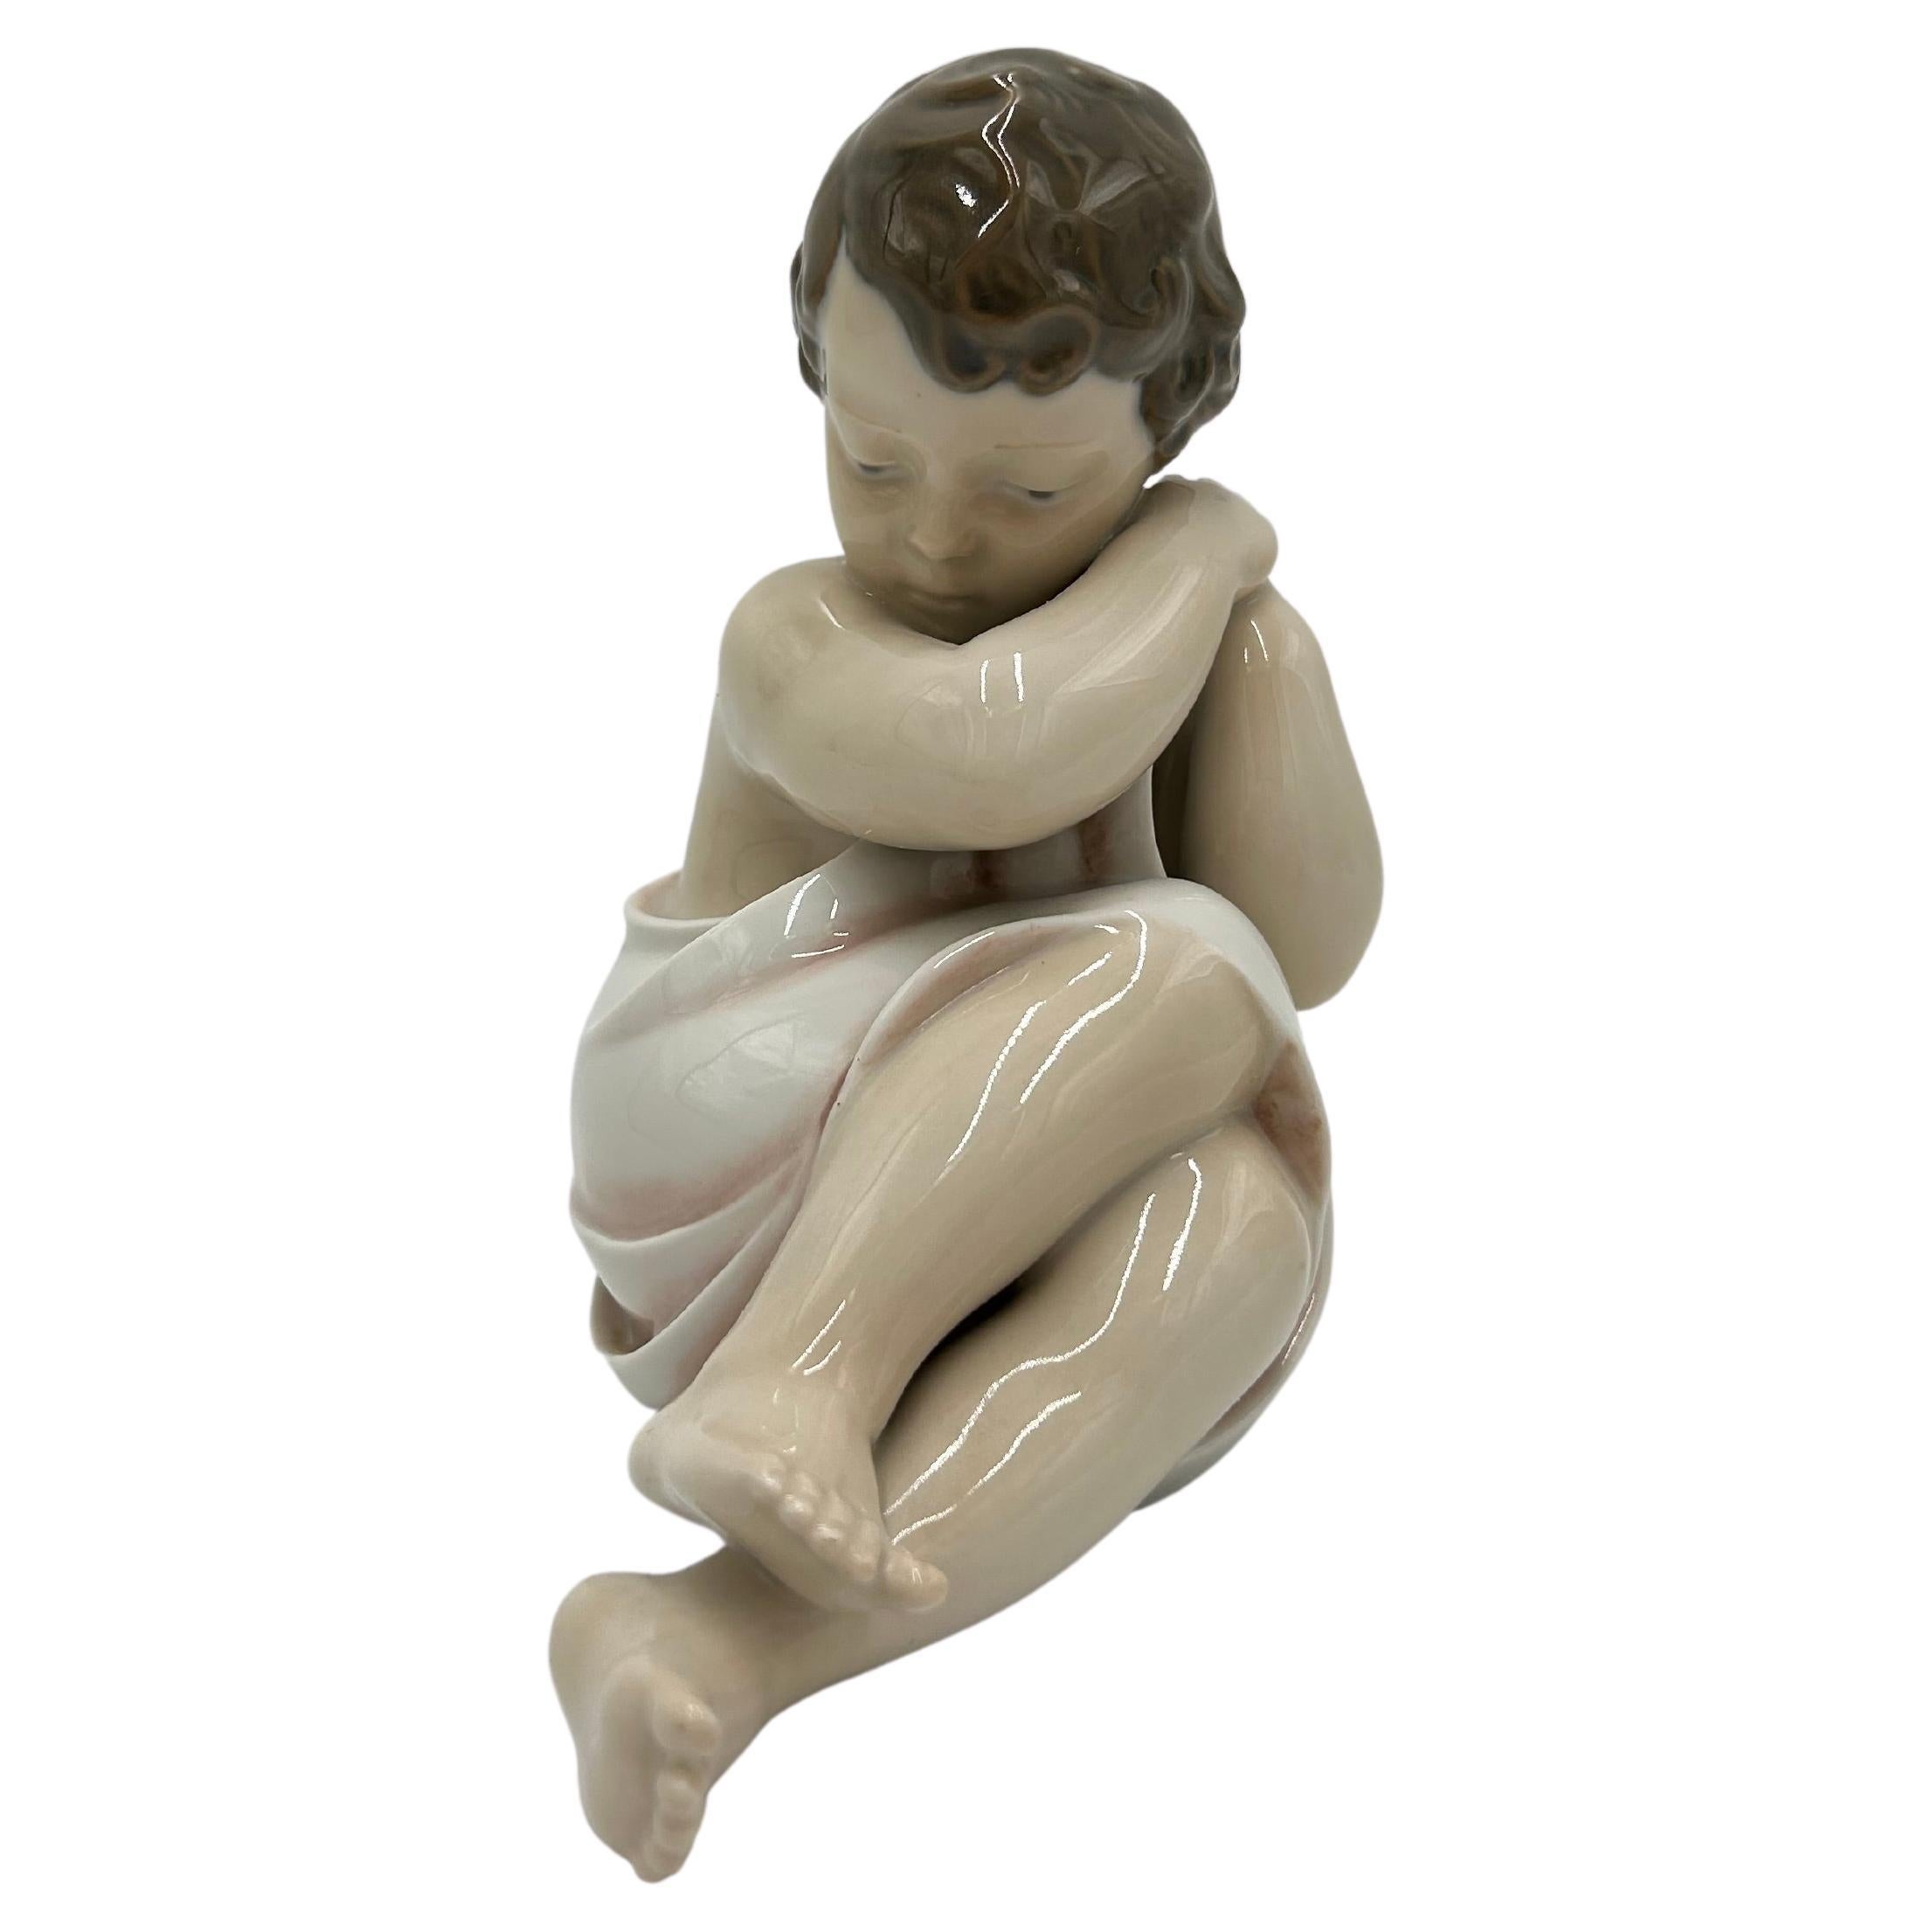 Porcelain Figurine "Cuddling Baby", Royal Copenhagen, Denmark, 1950s